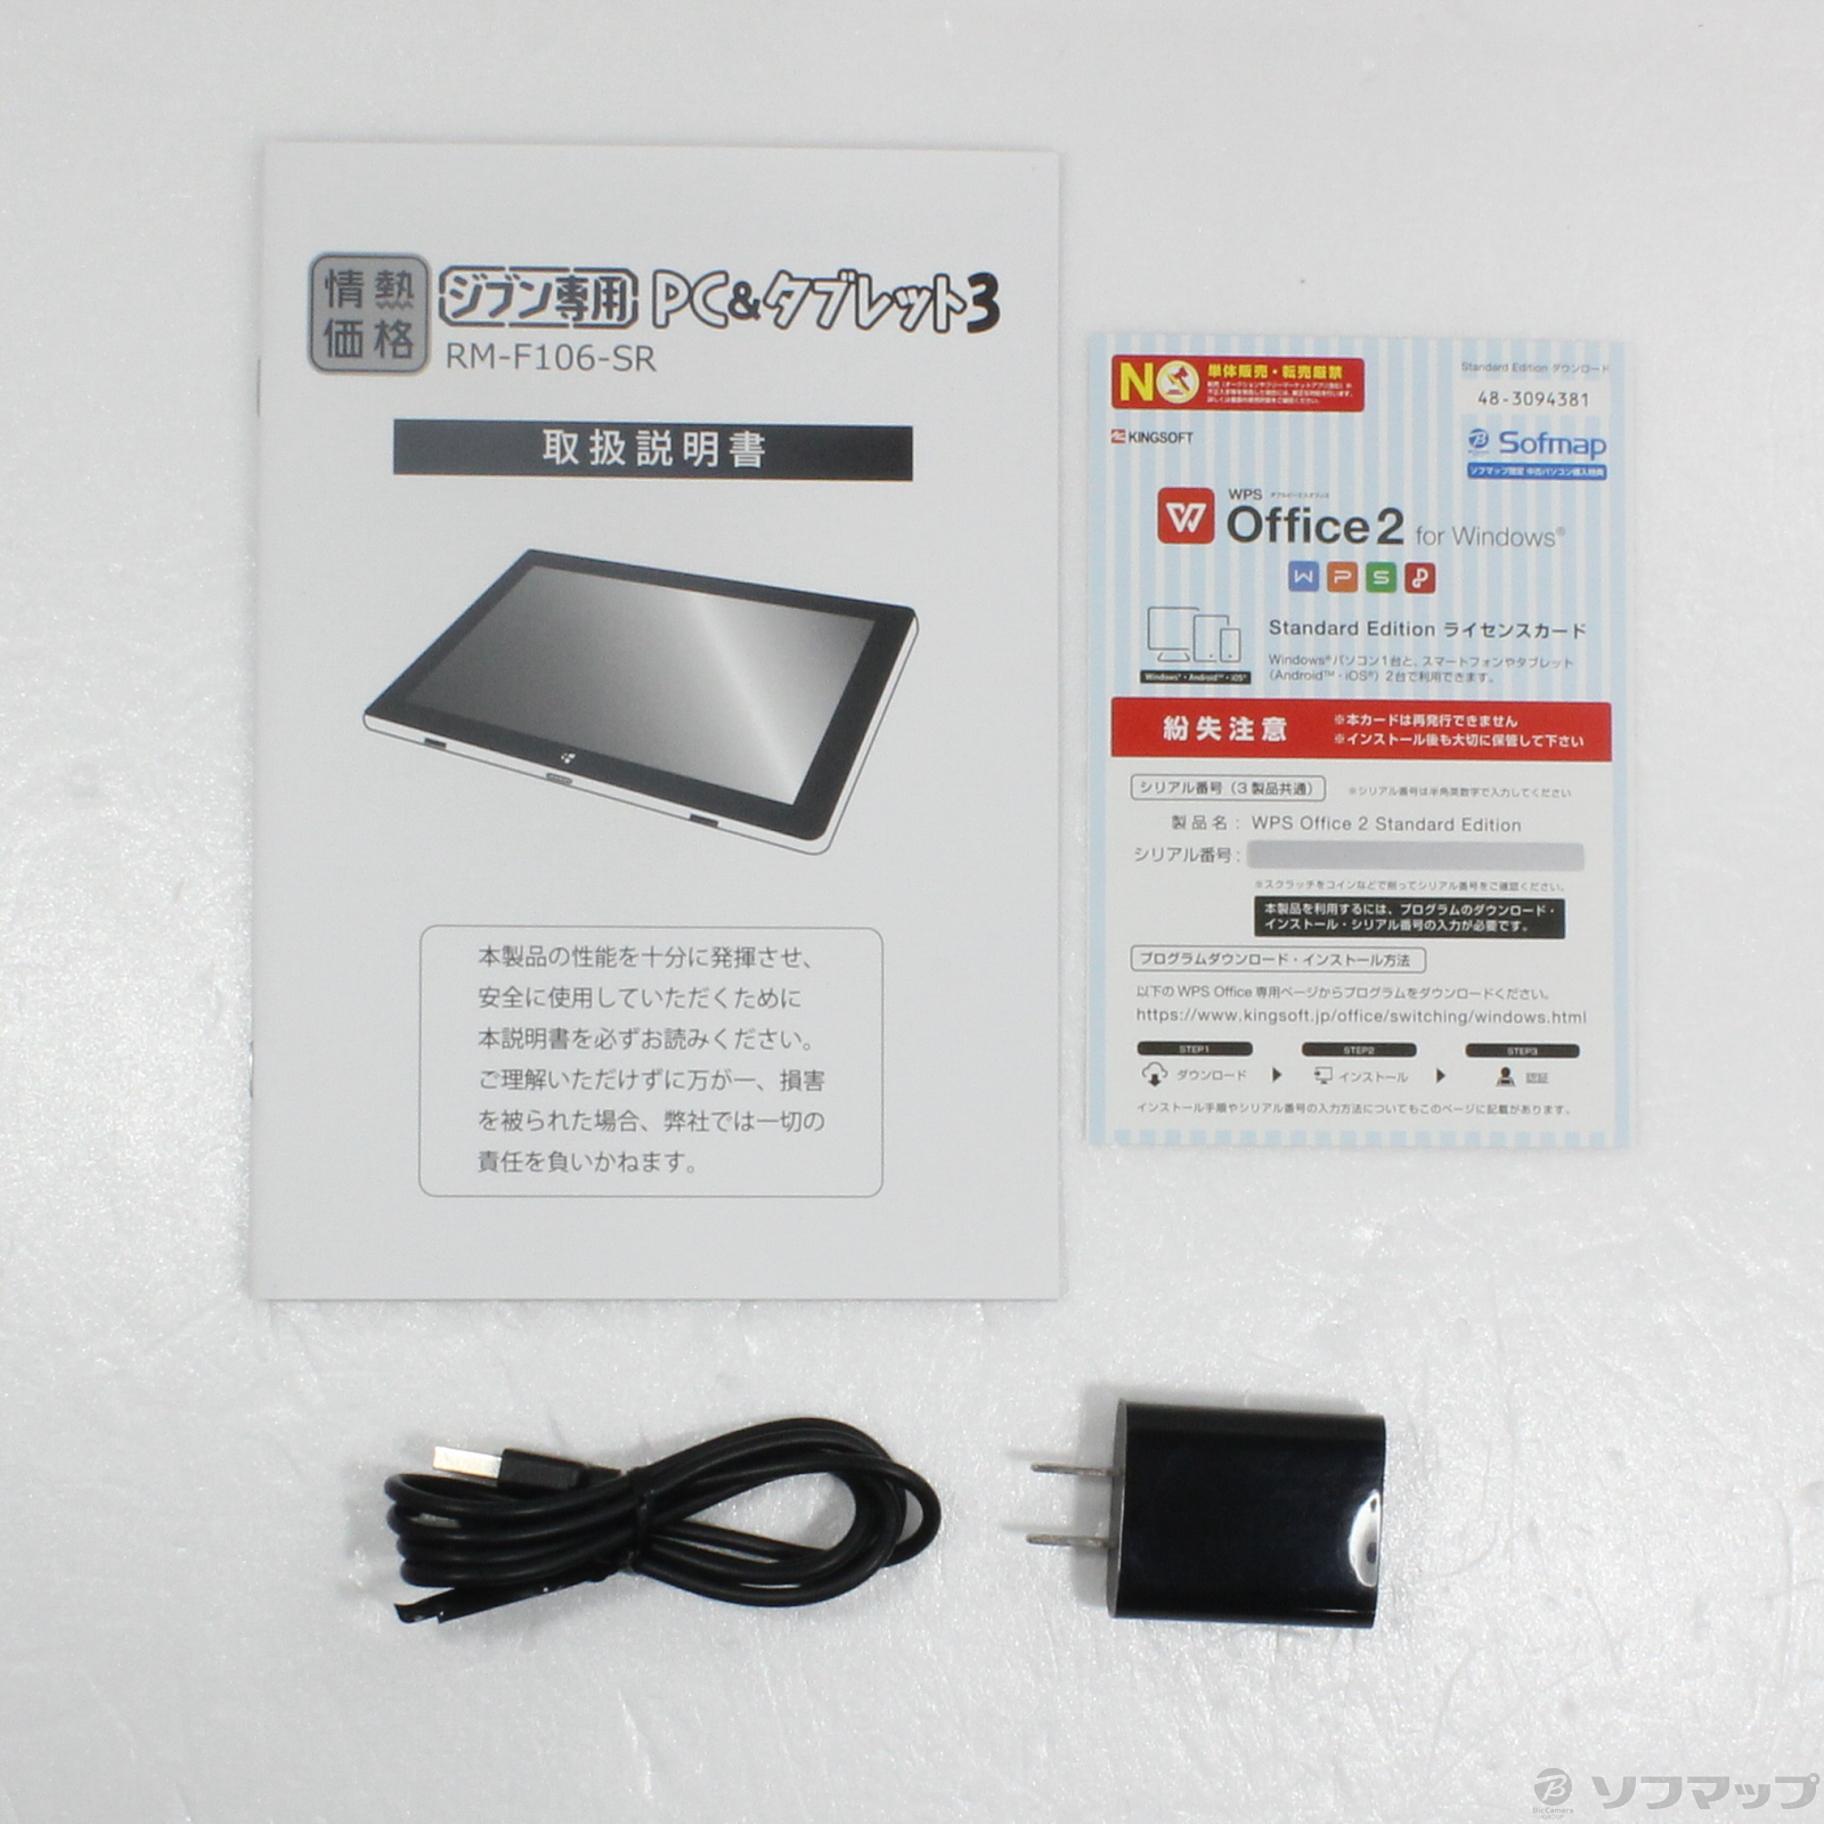 RM-F106-SR  ジブン専用PCタブレット3 - 4